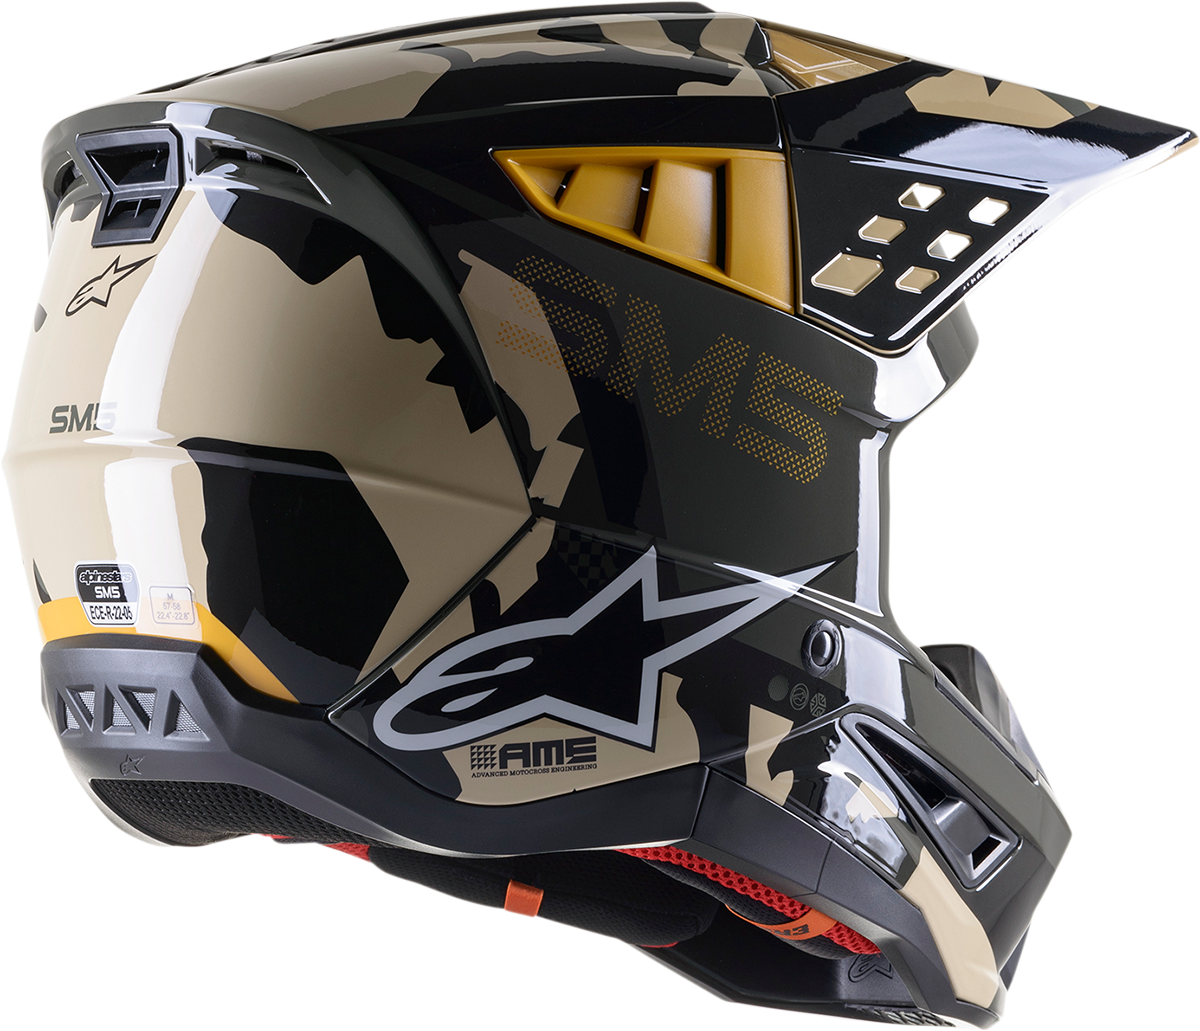 ALPINESTARS SM5 Helmet - Rover - Sand/Tangerine/Camo - Medium 8303921-8049-MD